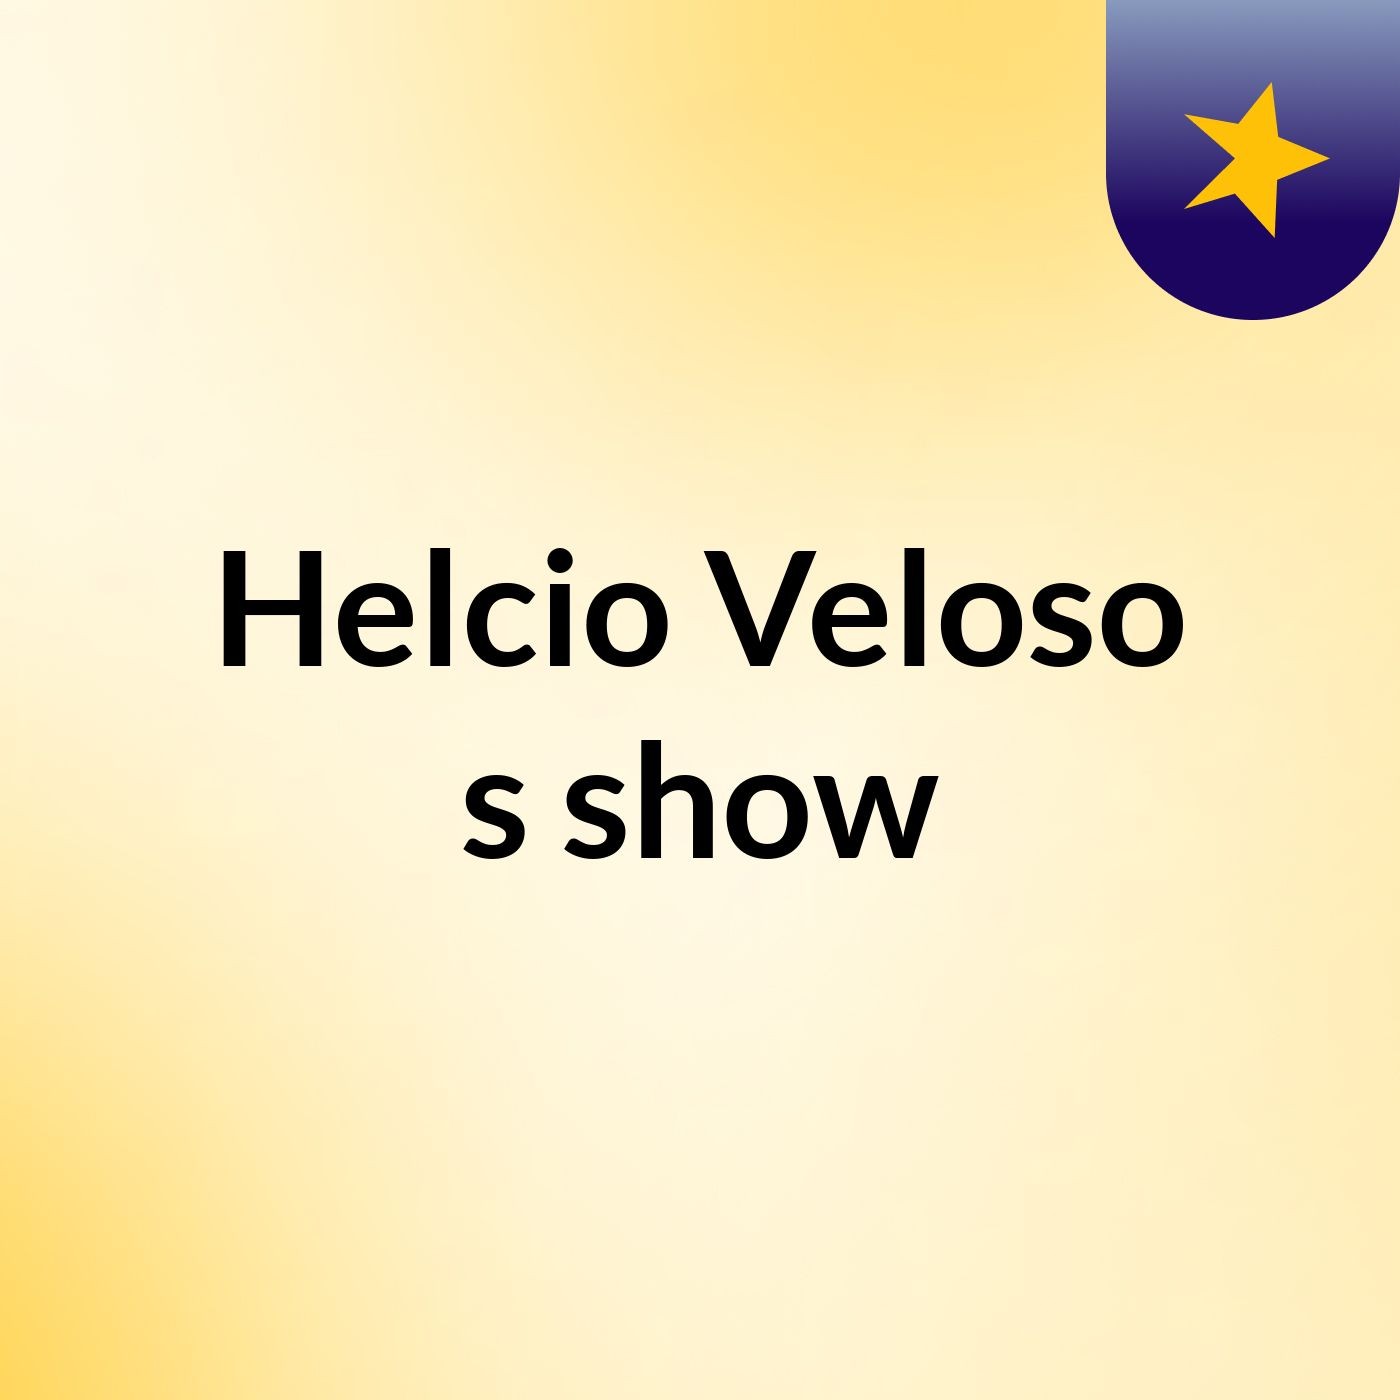 Helcio Veloso's show